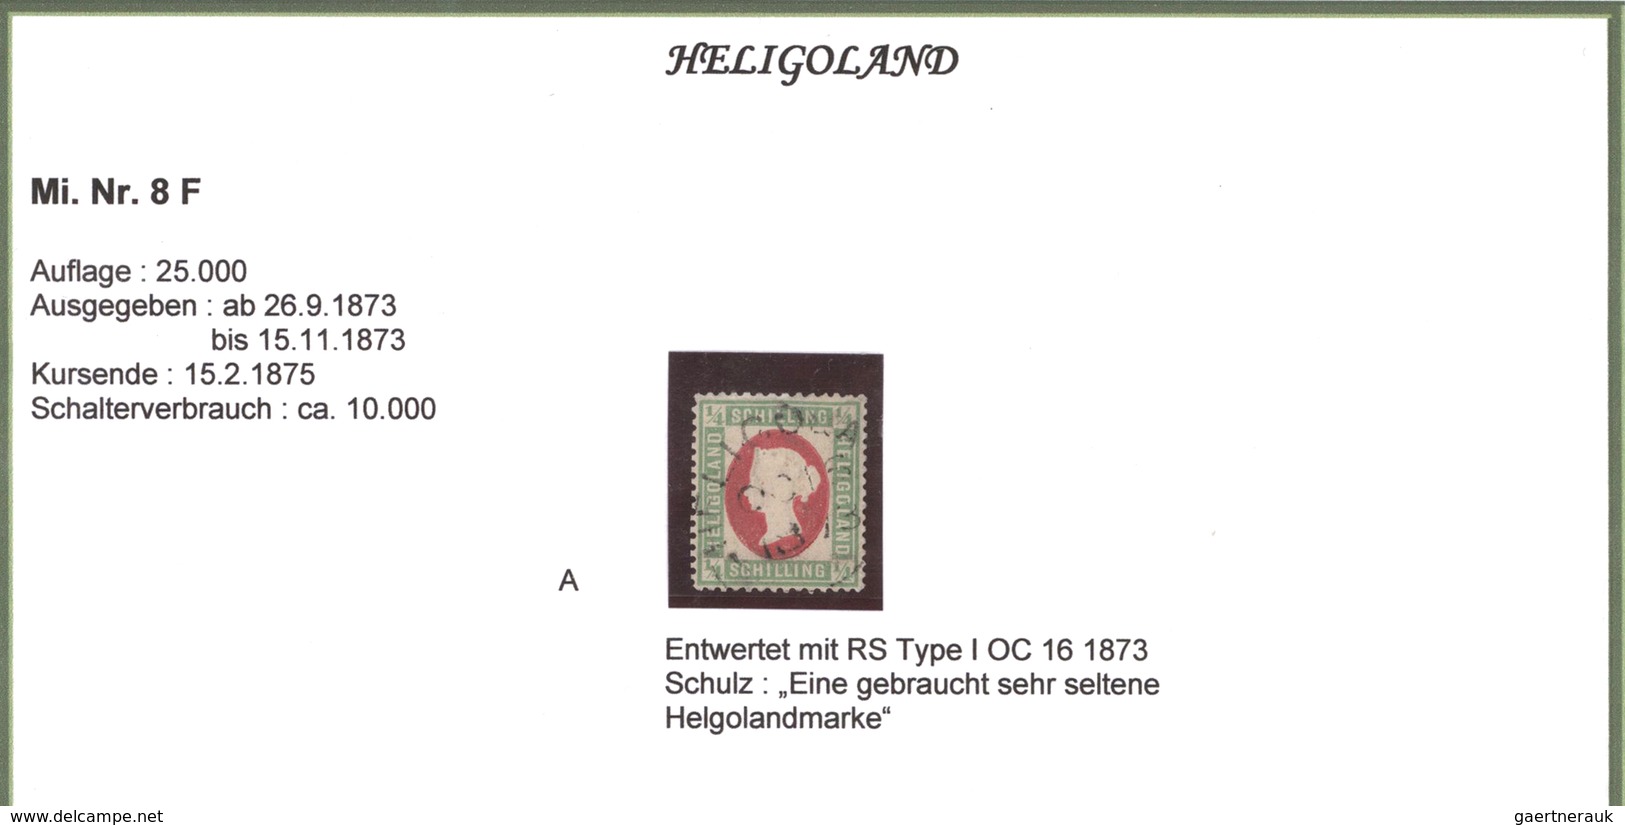 Helgoland - Marken und Briefe: 1809-1890: Hochspezialisierte und umfangreiche Sammlung von Briefen,